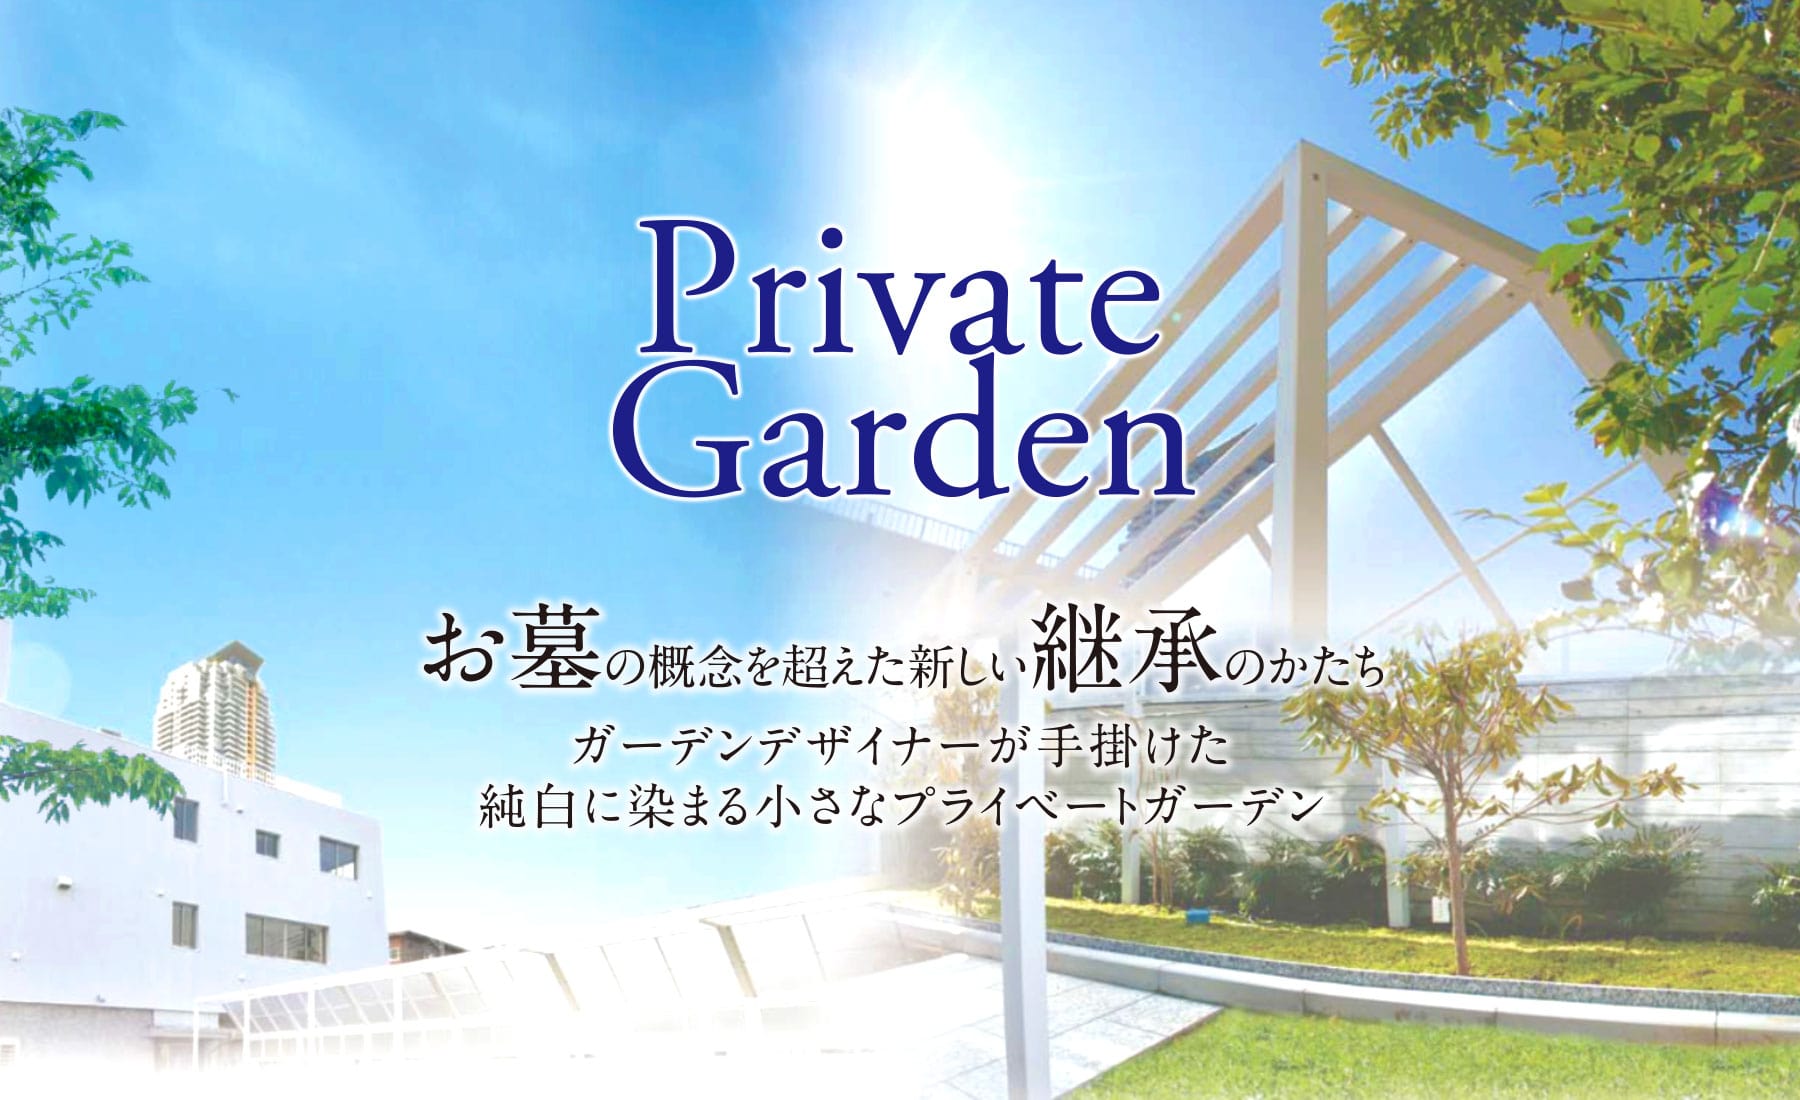 Private Garden お墓の概念を超えた新しい継承のかたち